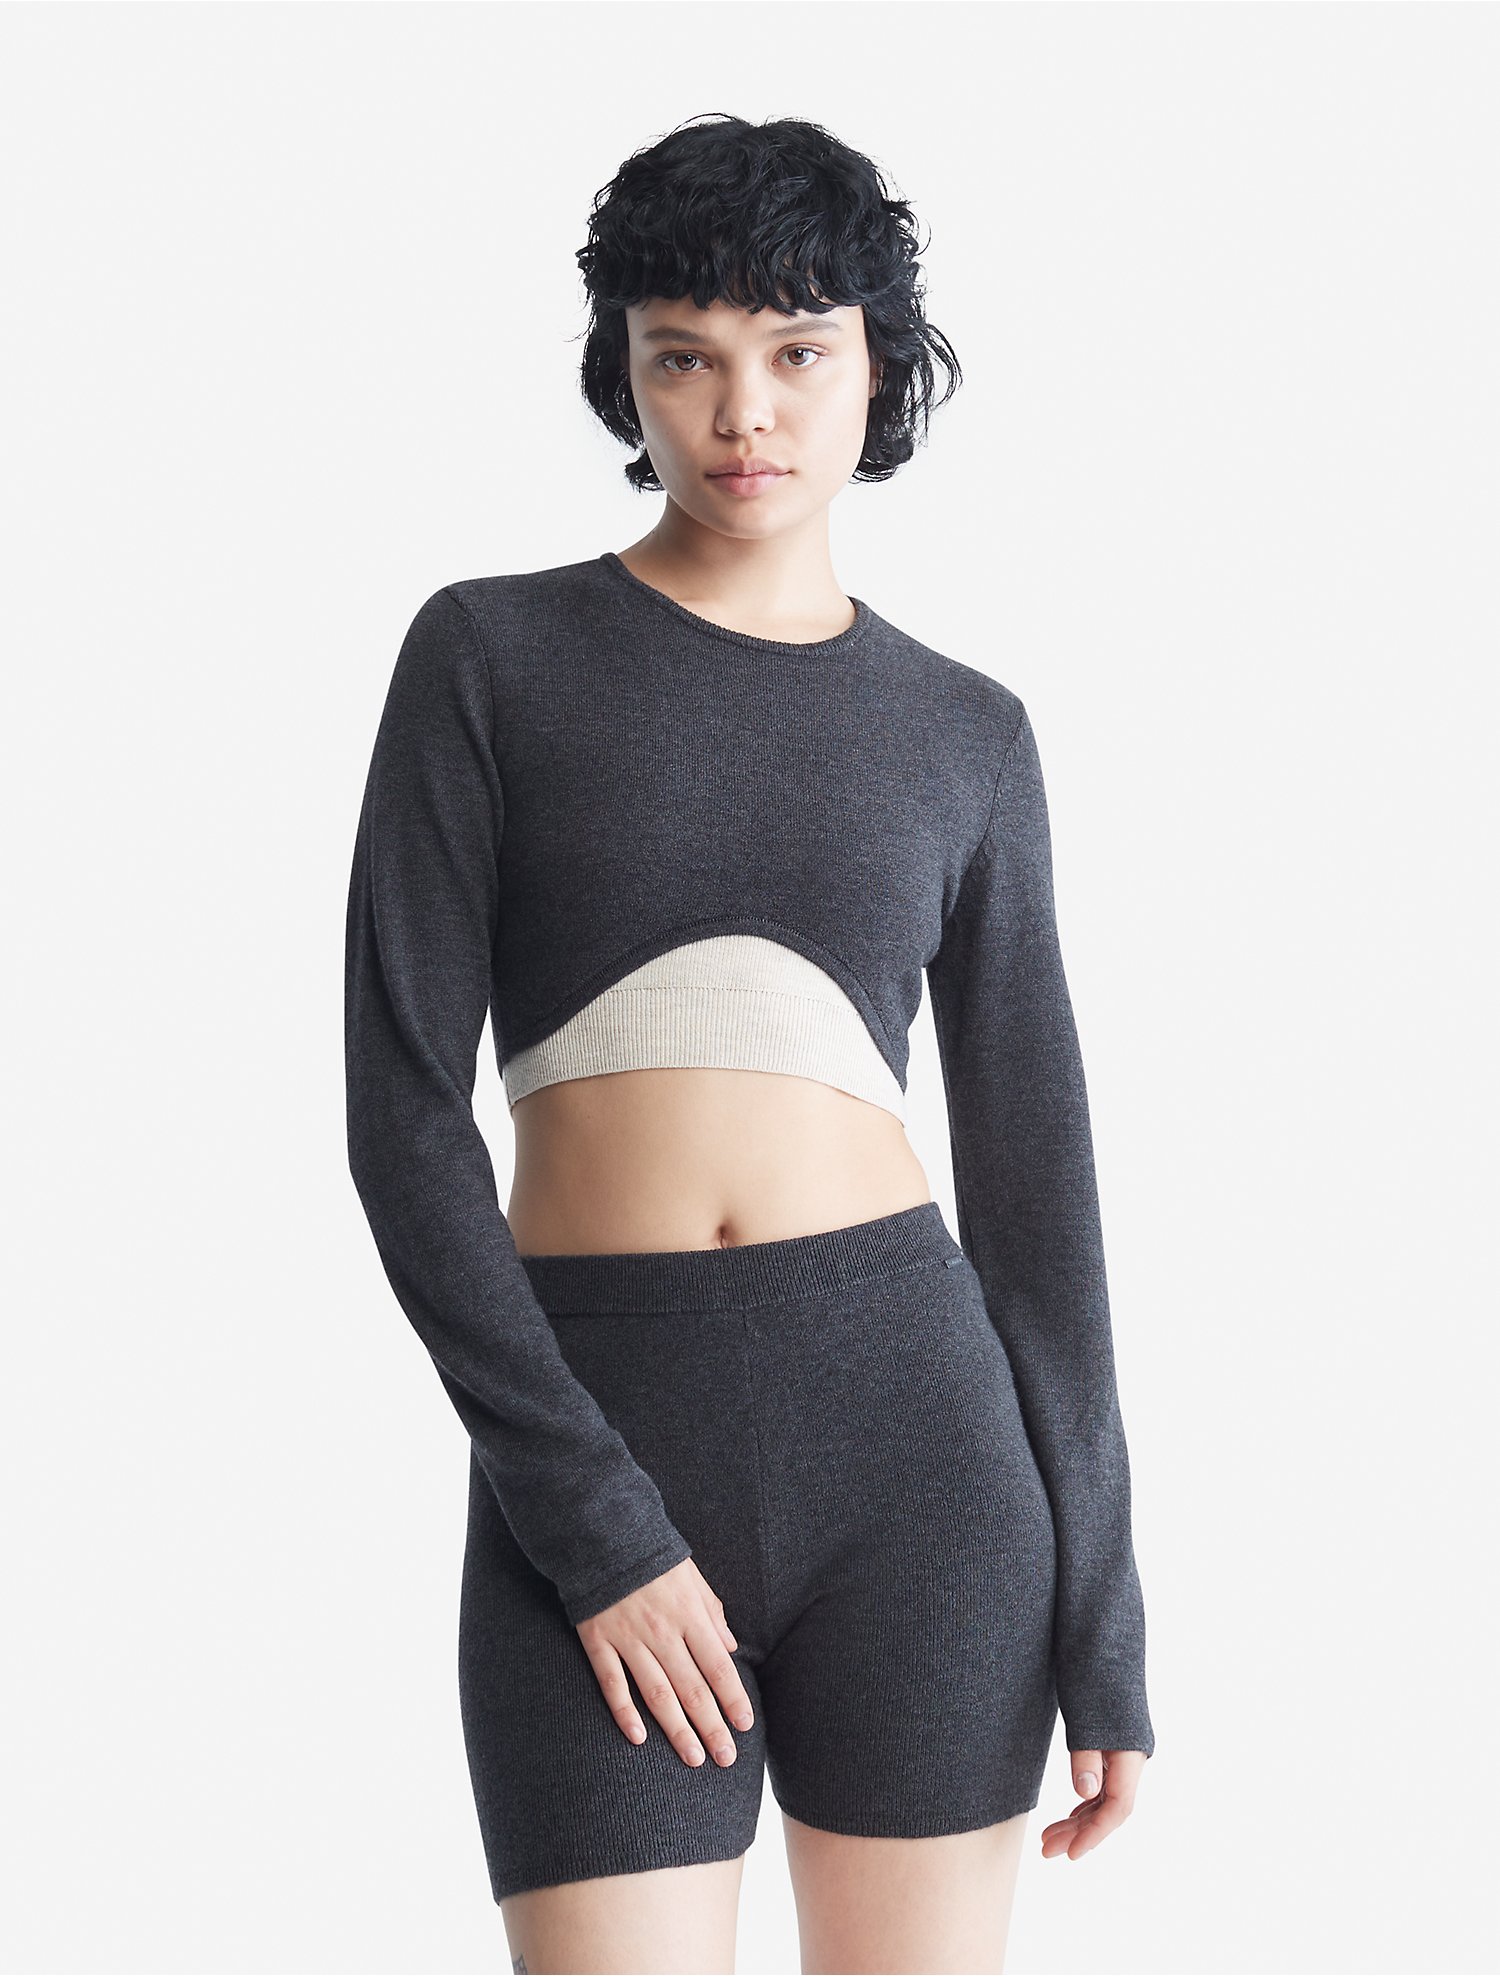 Ecologie Kwaadaardig Instrument Sweater Lounge Crewneck Long Sleeve Top | Calvin Klein